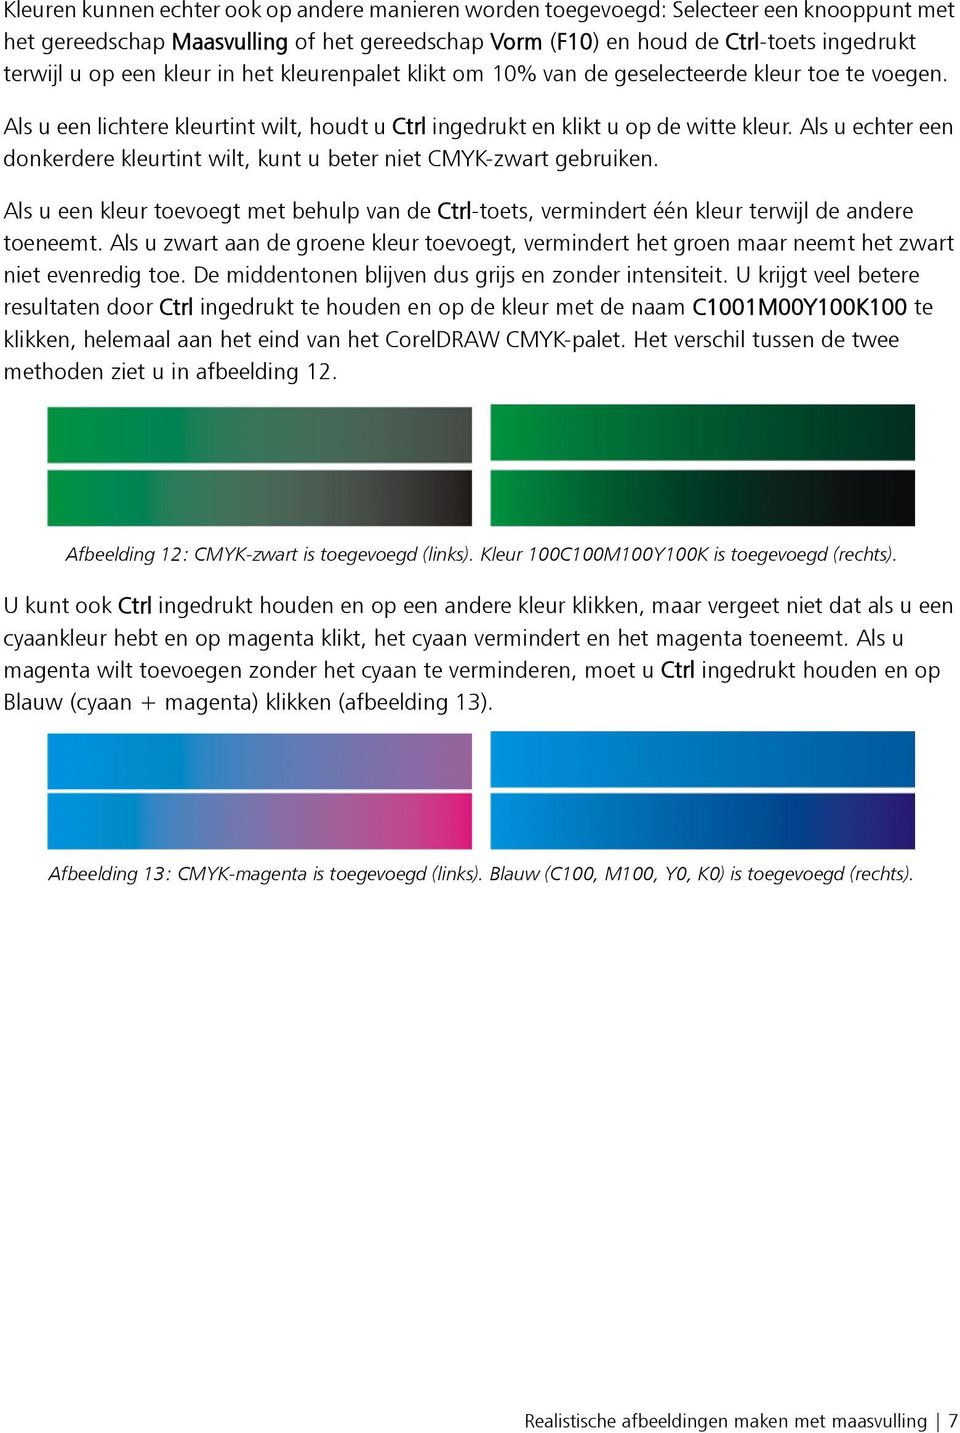 Als u echter een donkerdere kleurtint wilt, kunt u beter niet CMYK-zwart gebruiken. Als u een kleur toevoegt met behulp van de Ctrl-toets, vermindert één kleur terwijl de andere toeneemt.